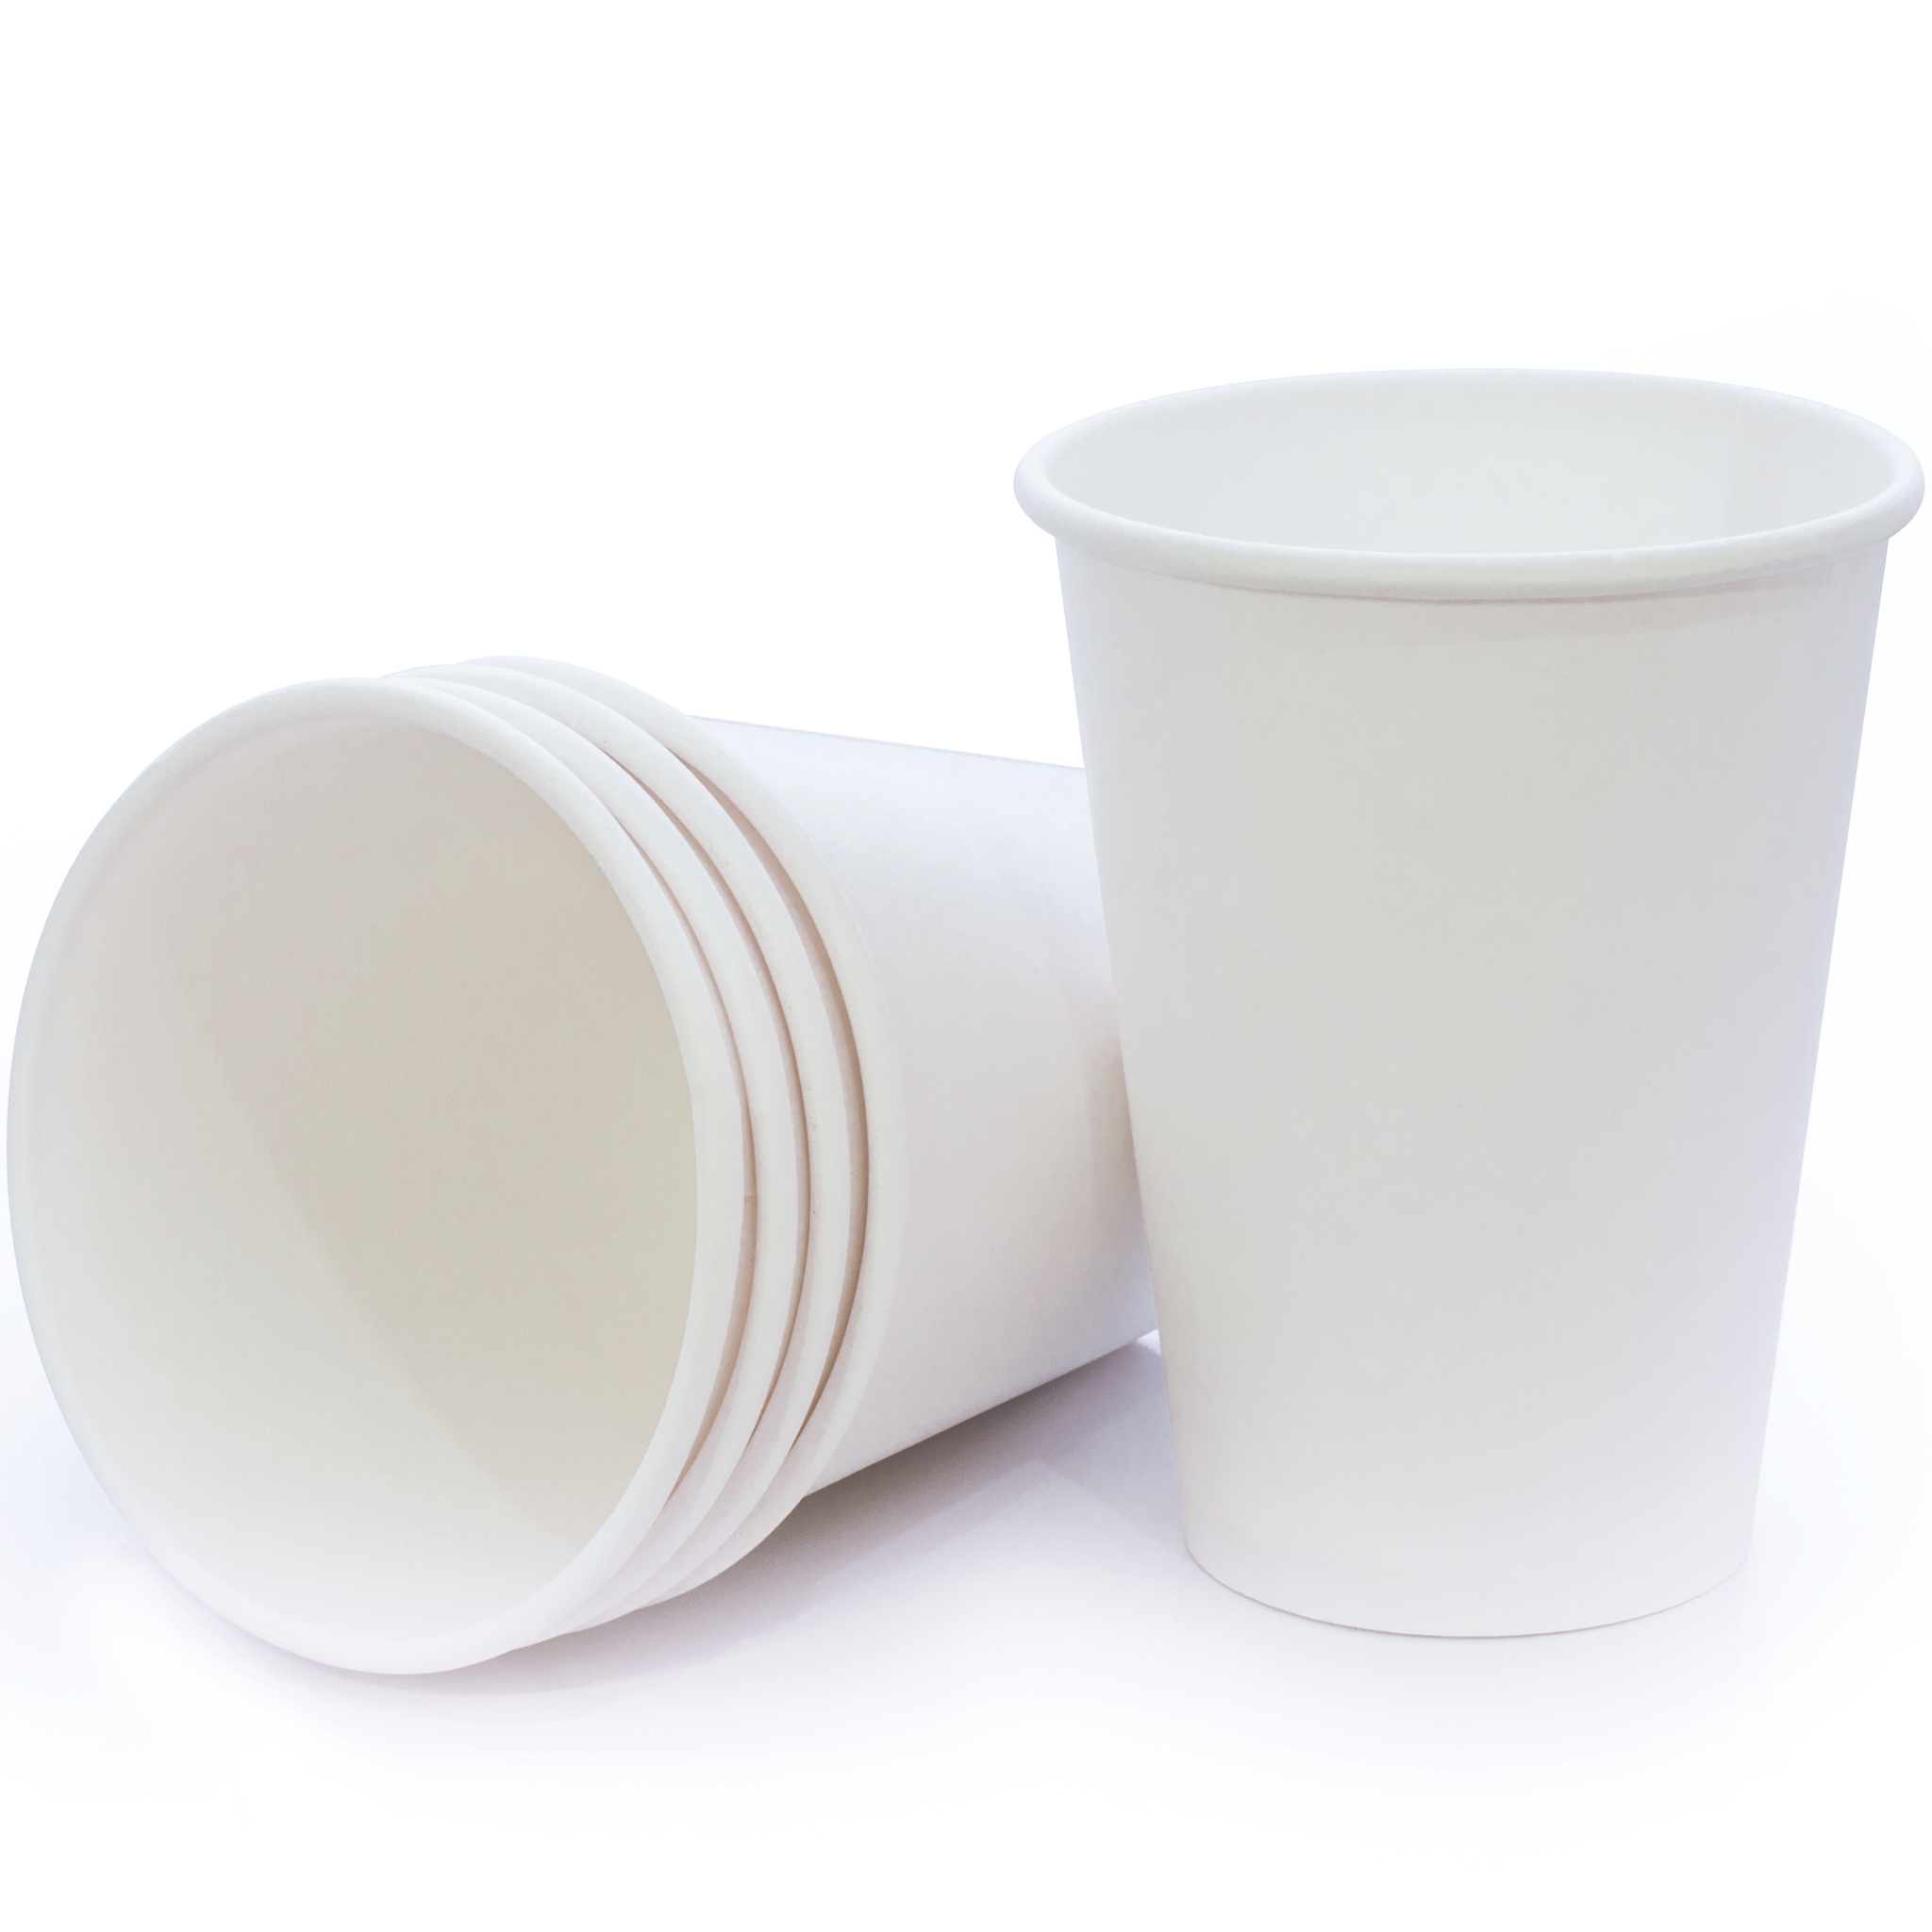 1000 cốc giấy trắng 6Oz-180ml dùng một lần ở các bình nước công cộng, trong văn phòng, bệnh viện| Ly giấy trắng size nhỏ